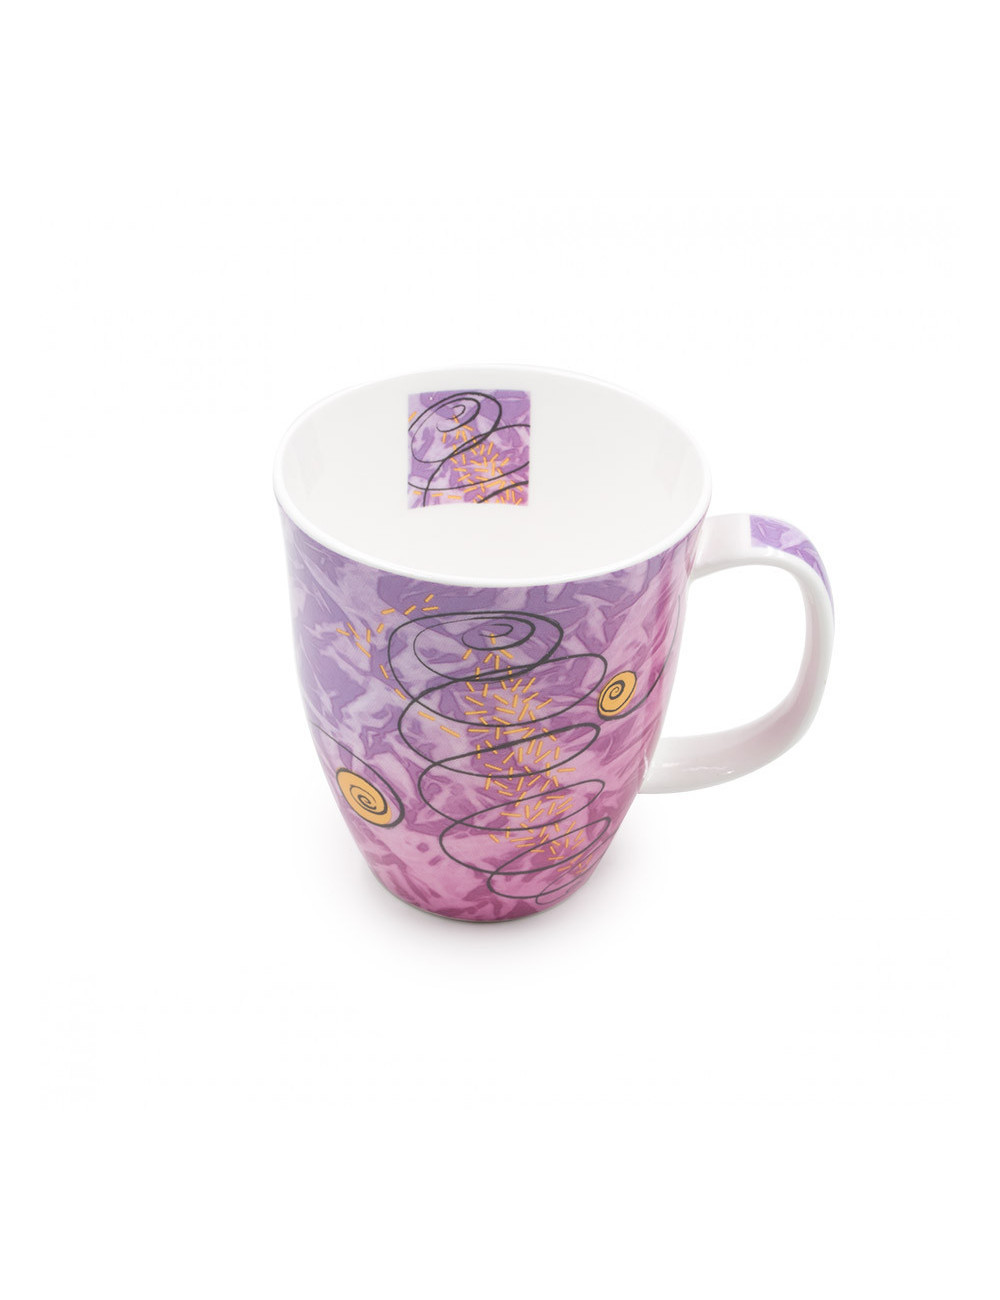 Originale mug in porcellana rosa con simboli dei 4 elementi naturali - La Pianta del Tè acquista online